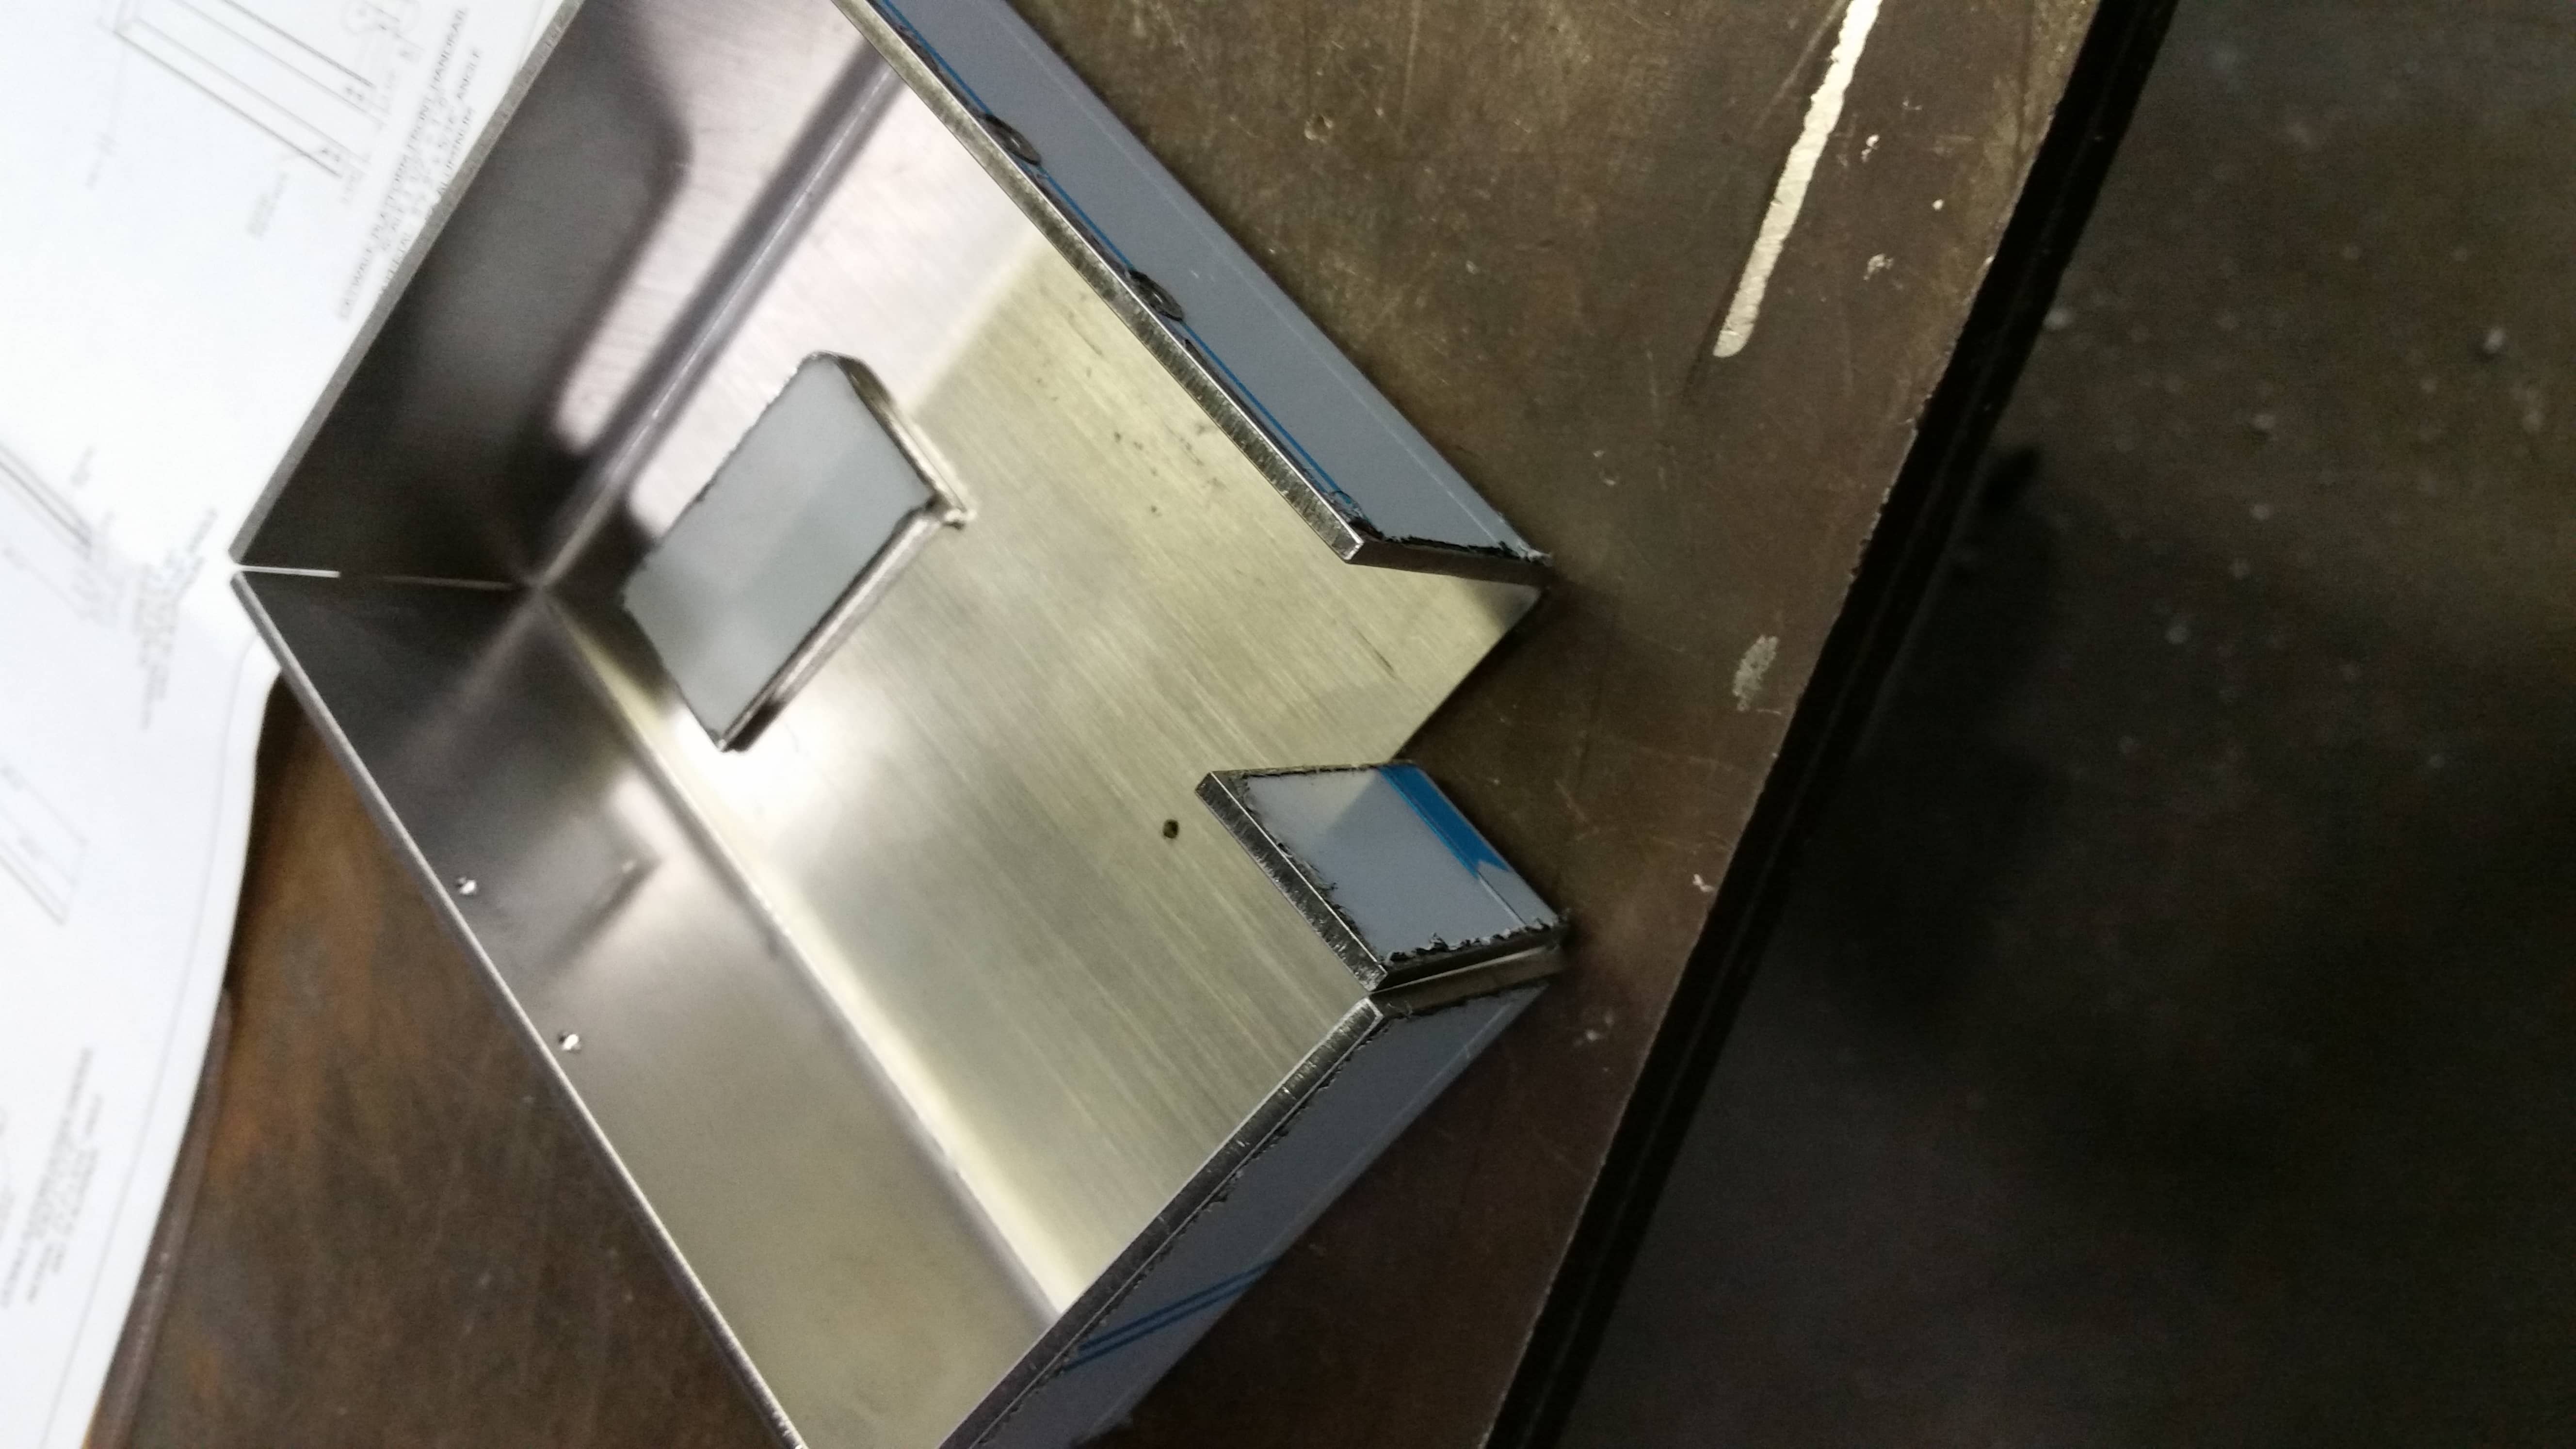 Stainless Steel irregular box not welded